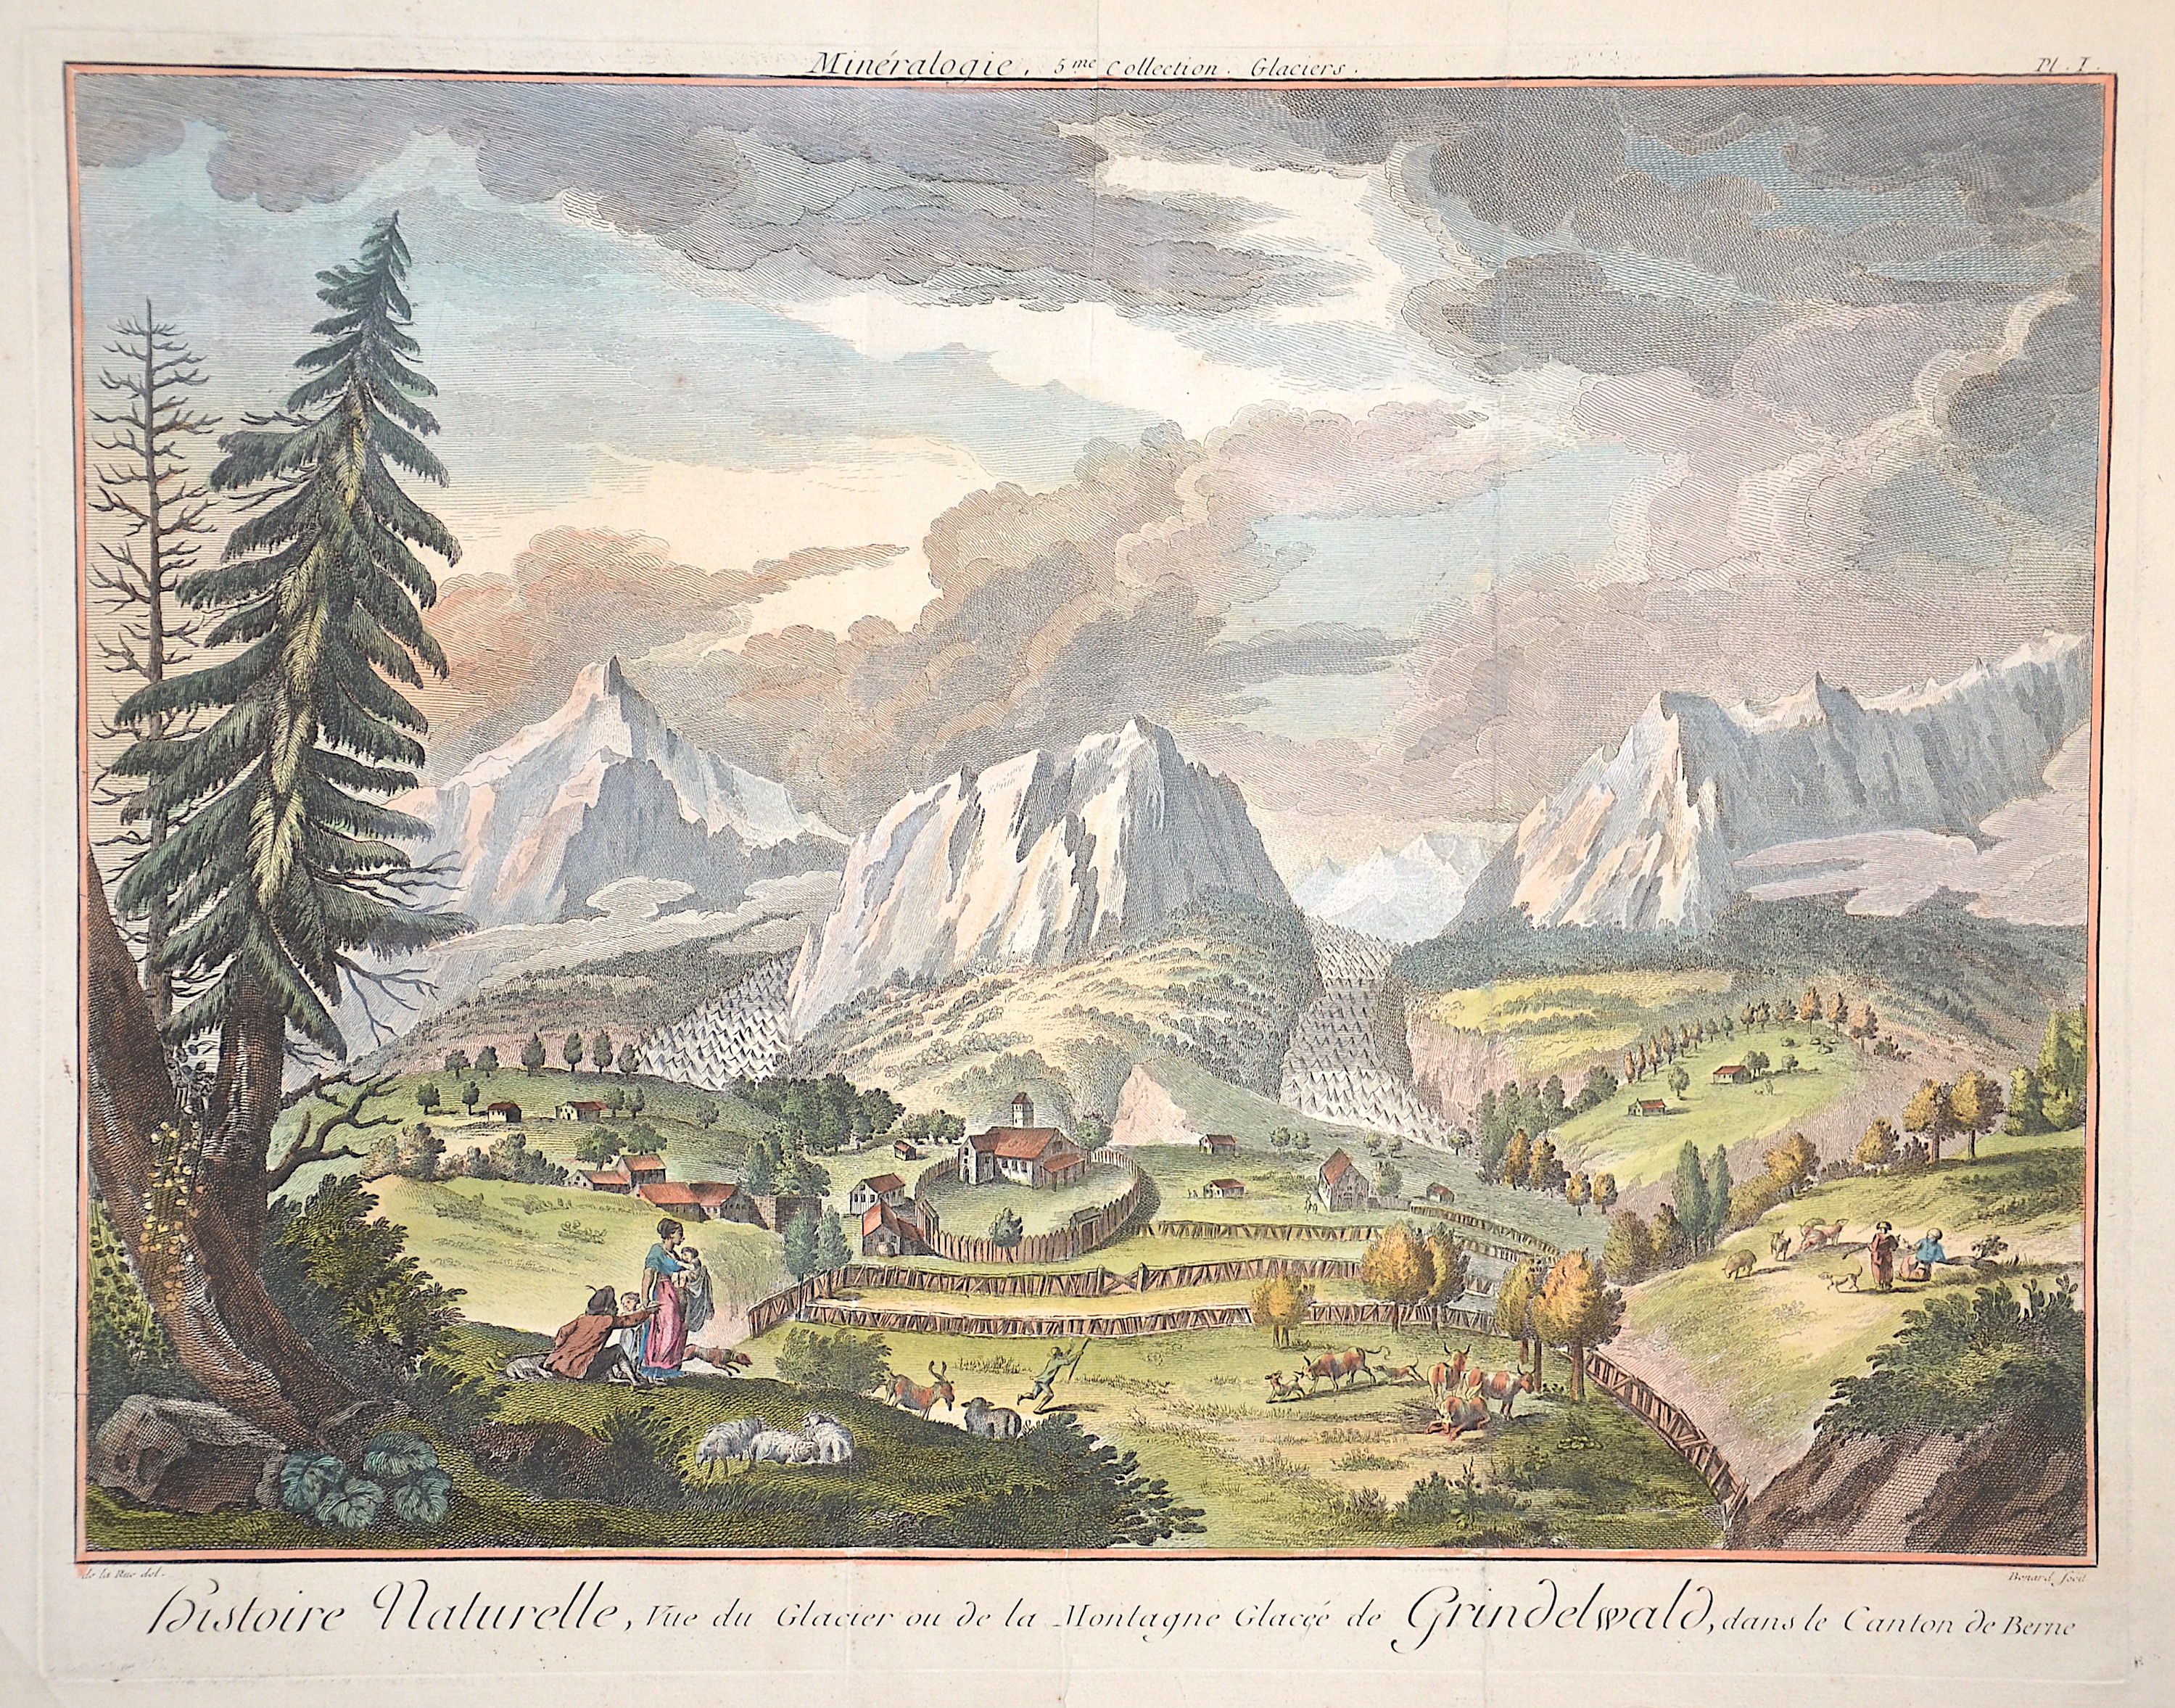 Benard Robert Histoire naturelle, vue du Glacier de la Montagne Glacée de Grindelwald, dans le Canton de Bern